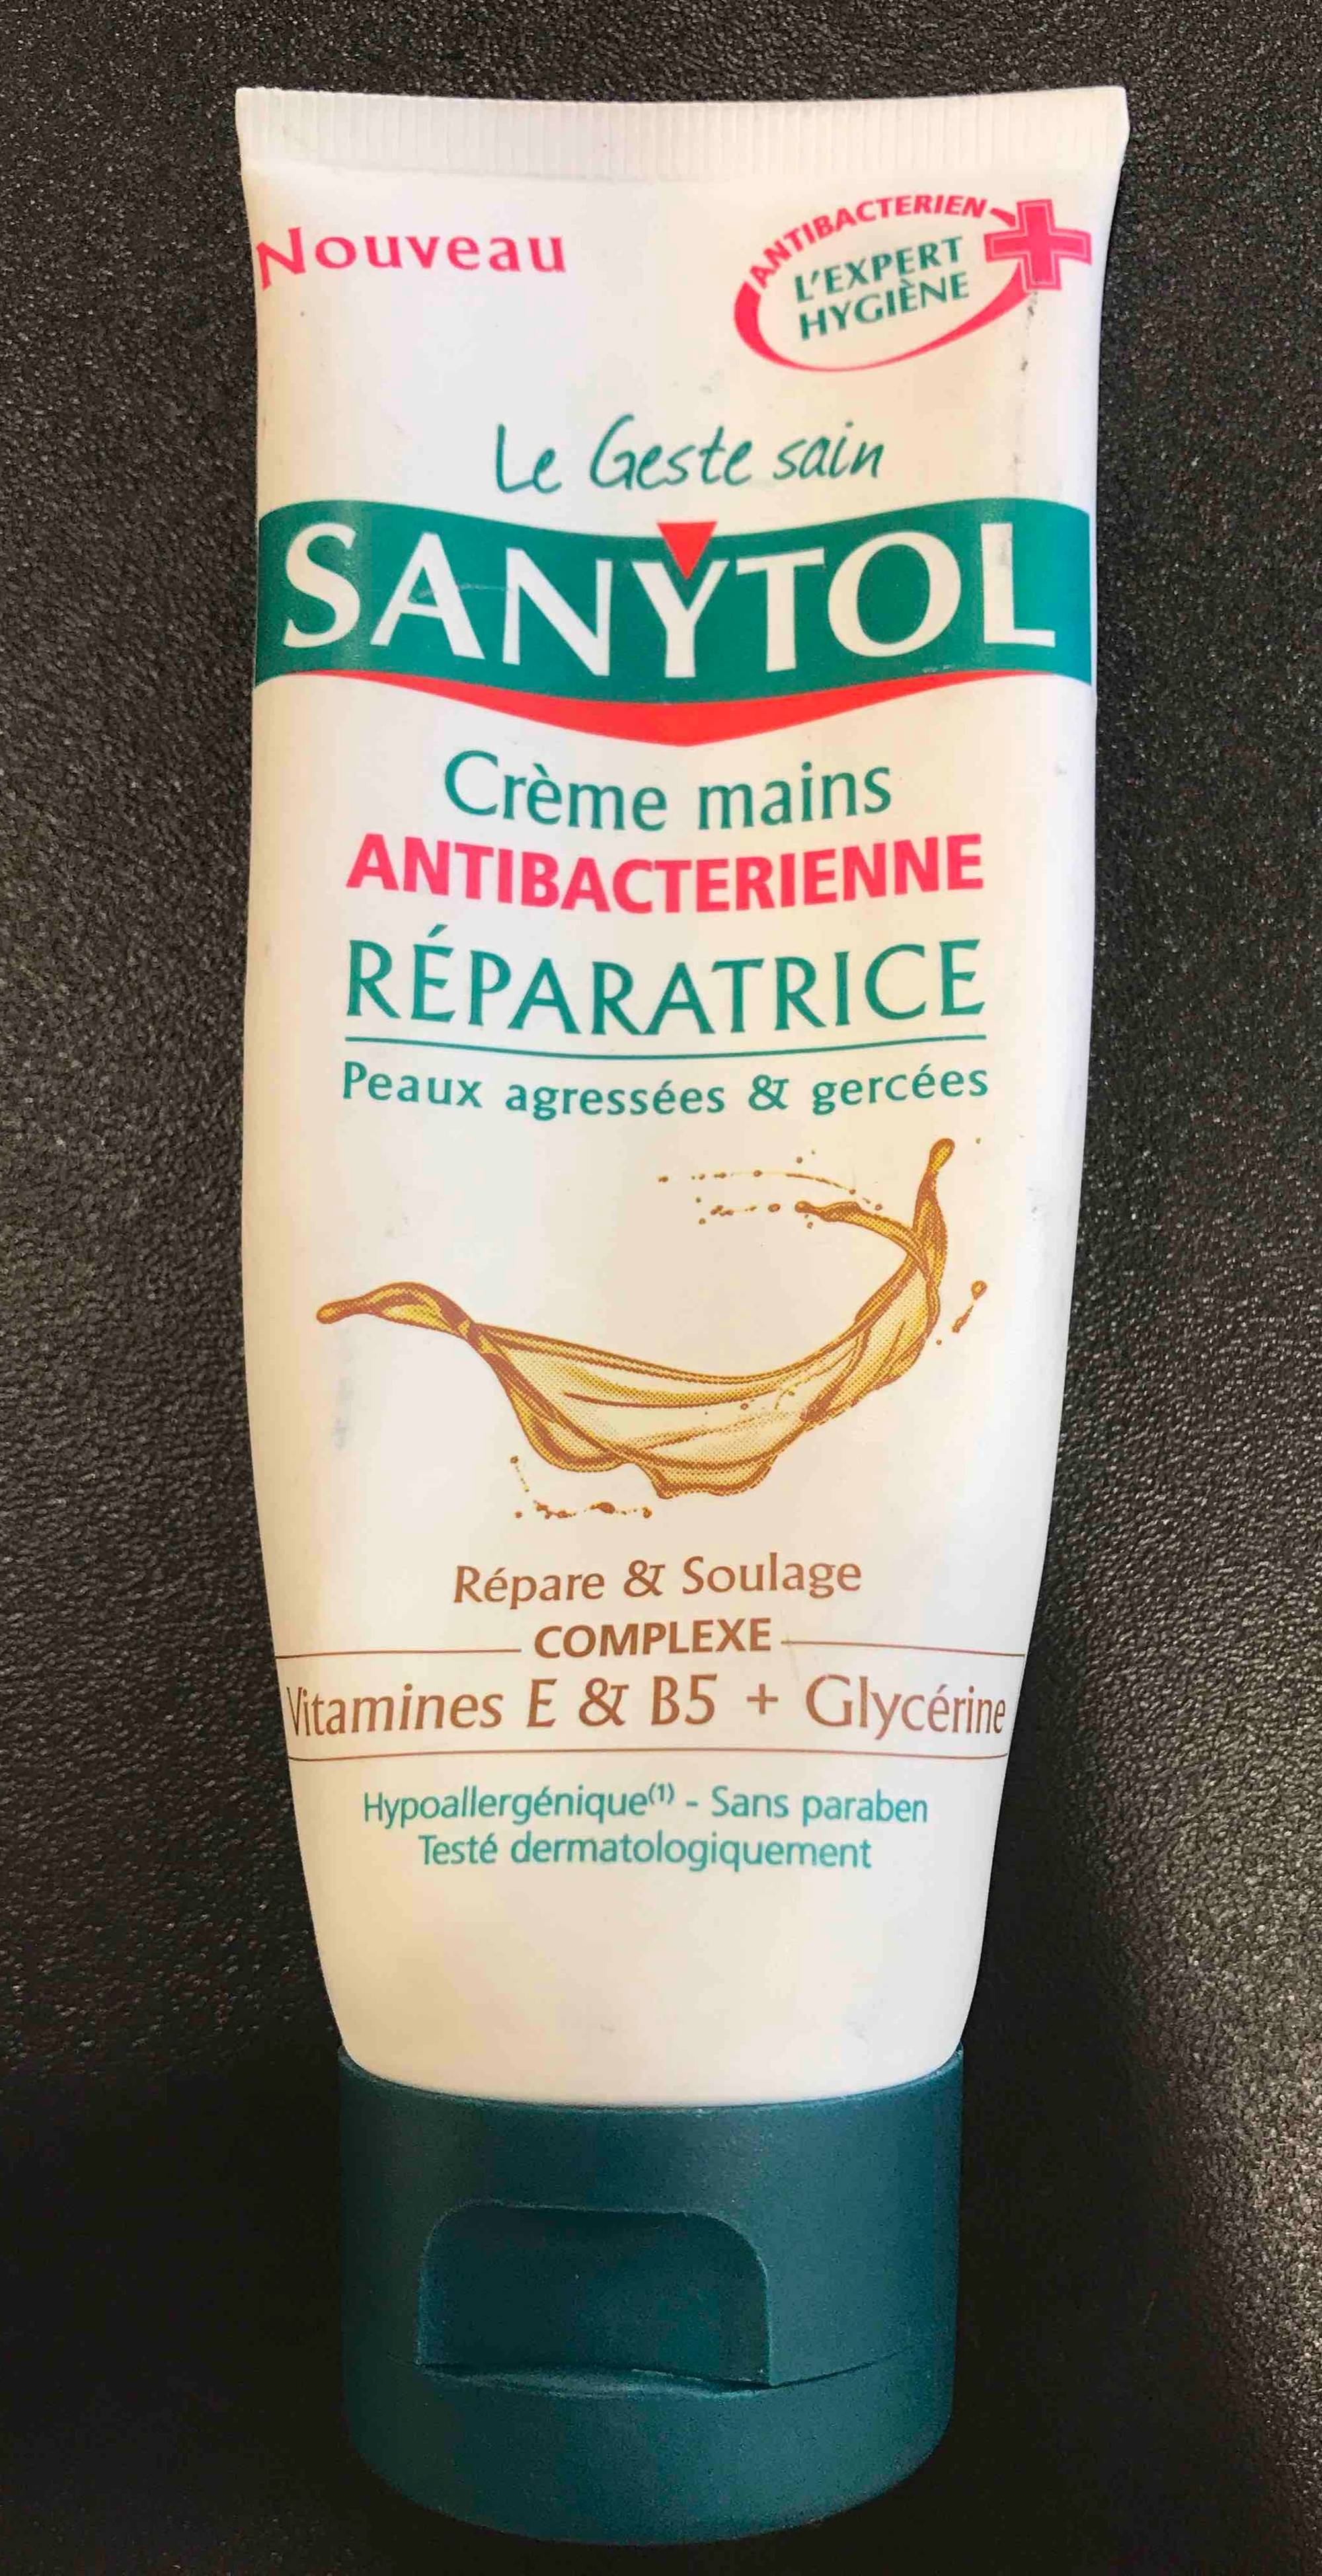 SANYTOL - Crème mains antibactérienne